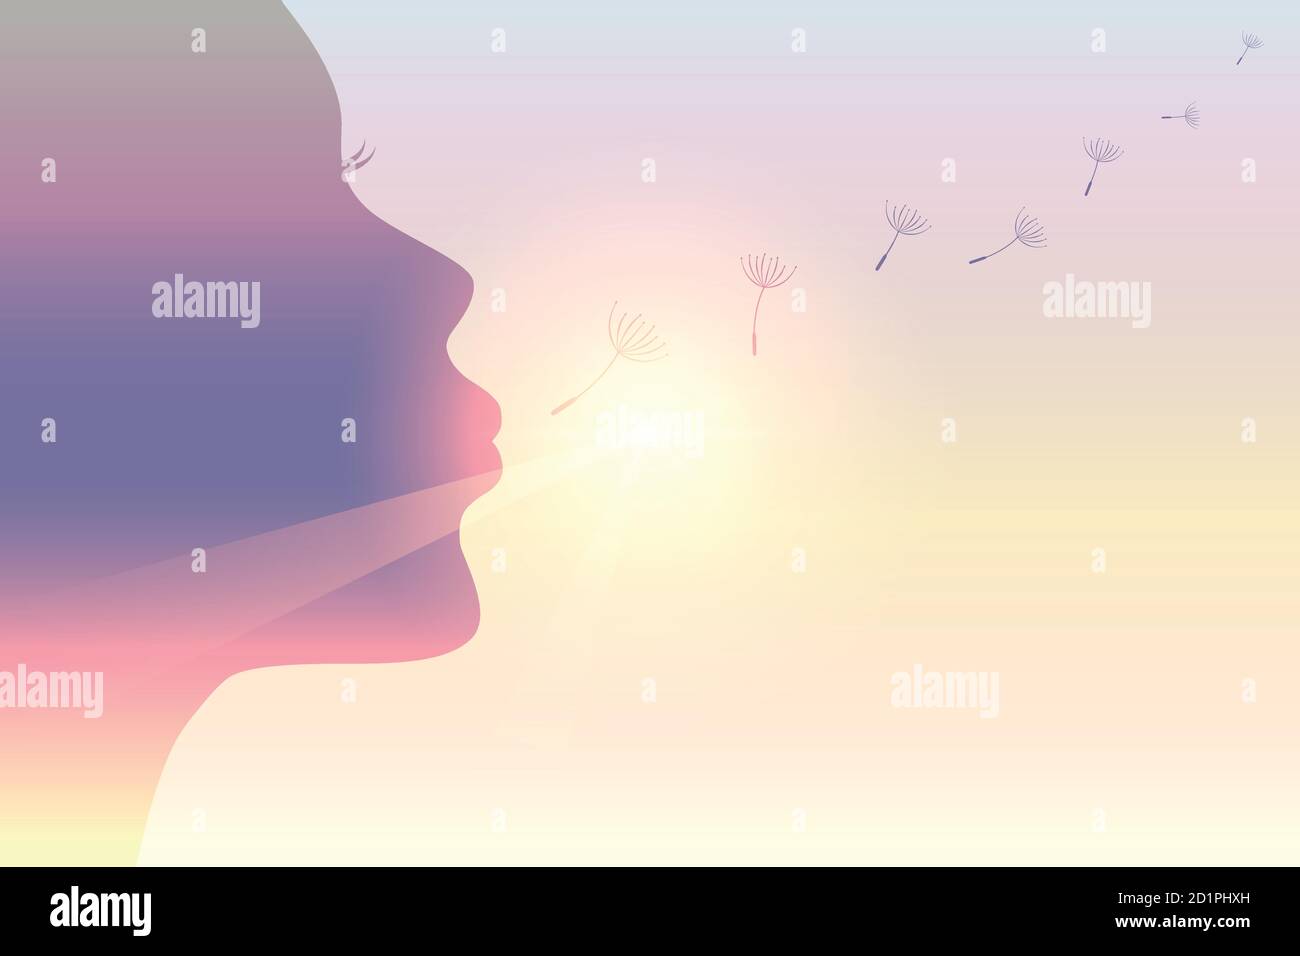 girl blows dandelion silhouette on sunny sky vector illustration EPS10 ...